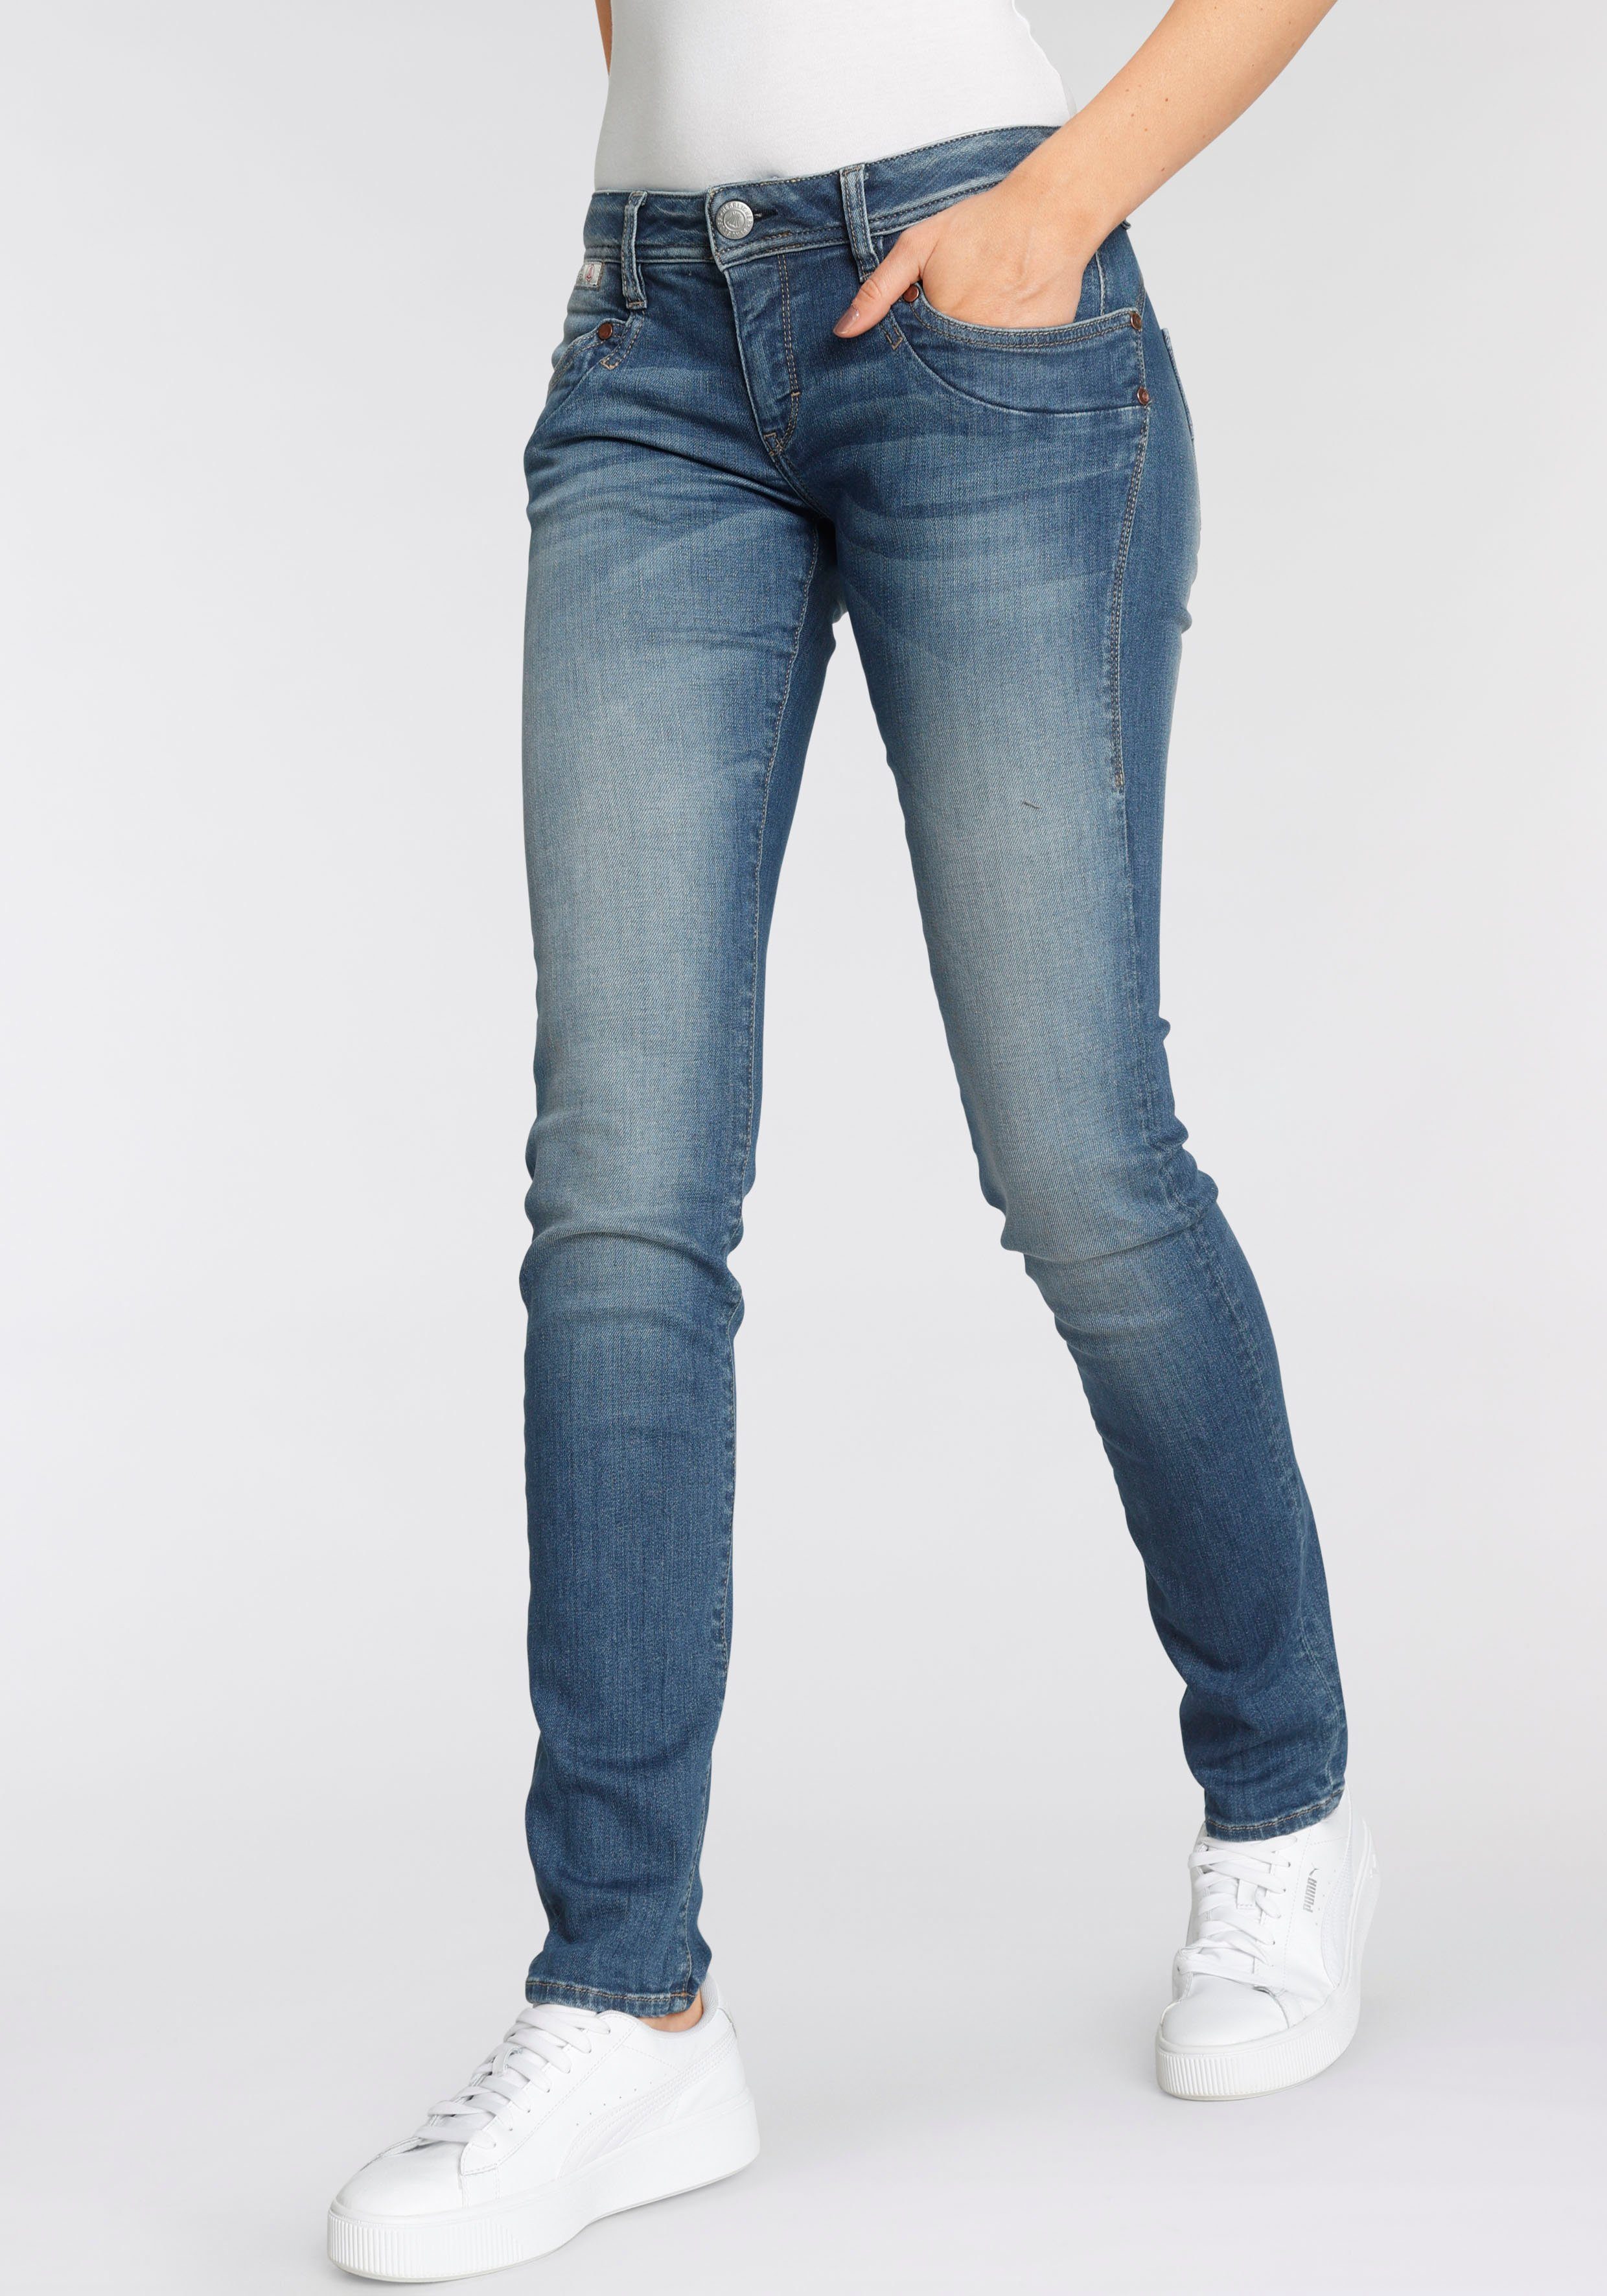 Technology SLIM PIPER Kitotex ORGANIC umweltfreundlich Slim-fit-Jeans dank Herrlicher